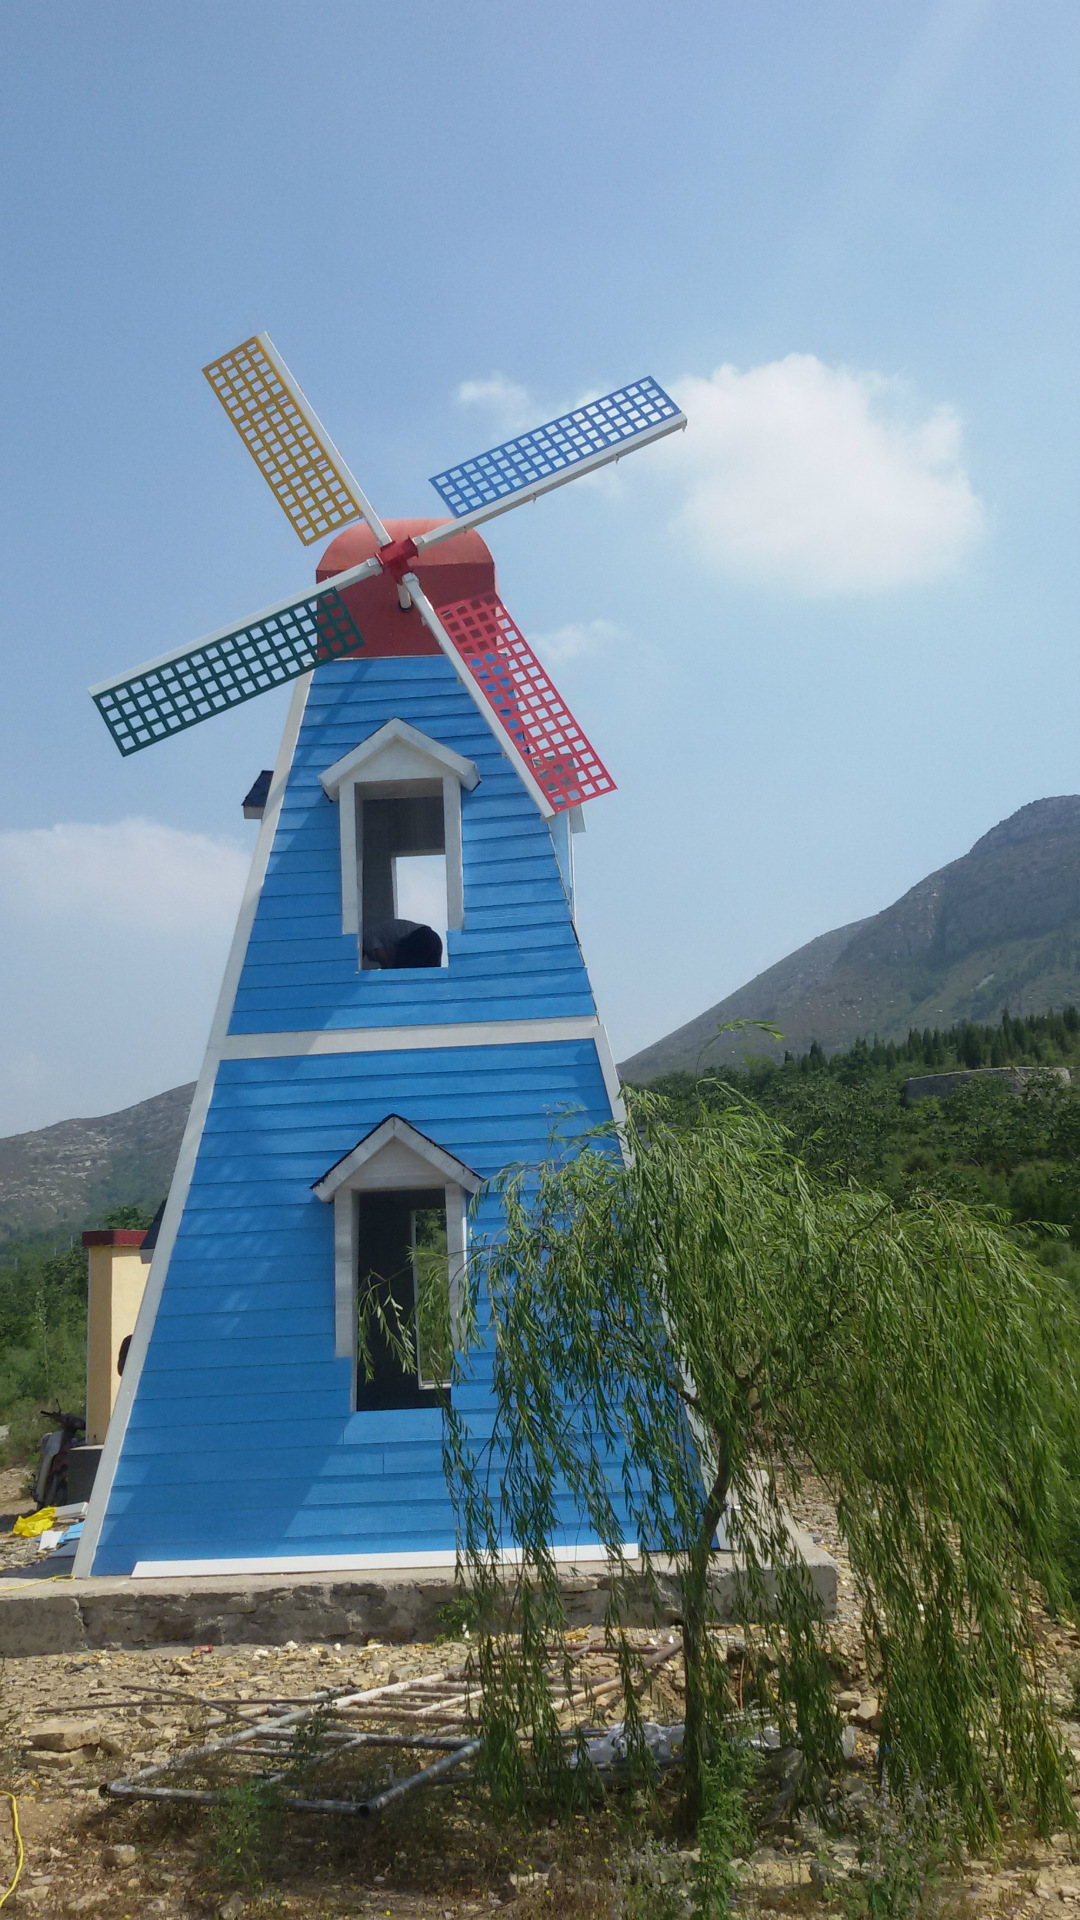 荷兰风车展可定做各种造型的风车|资源-元素谷(OSOGOO)